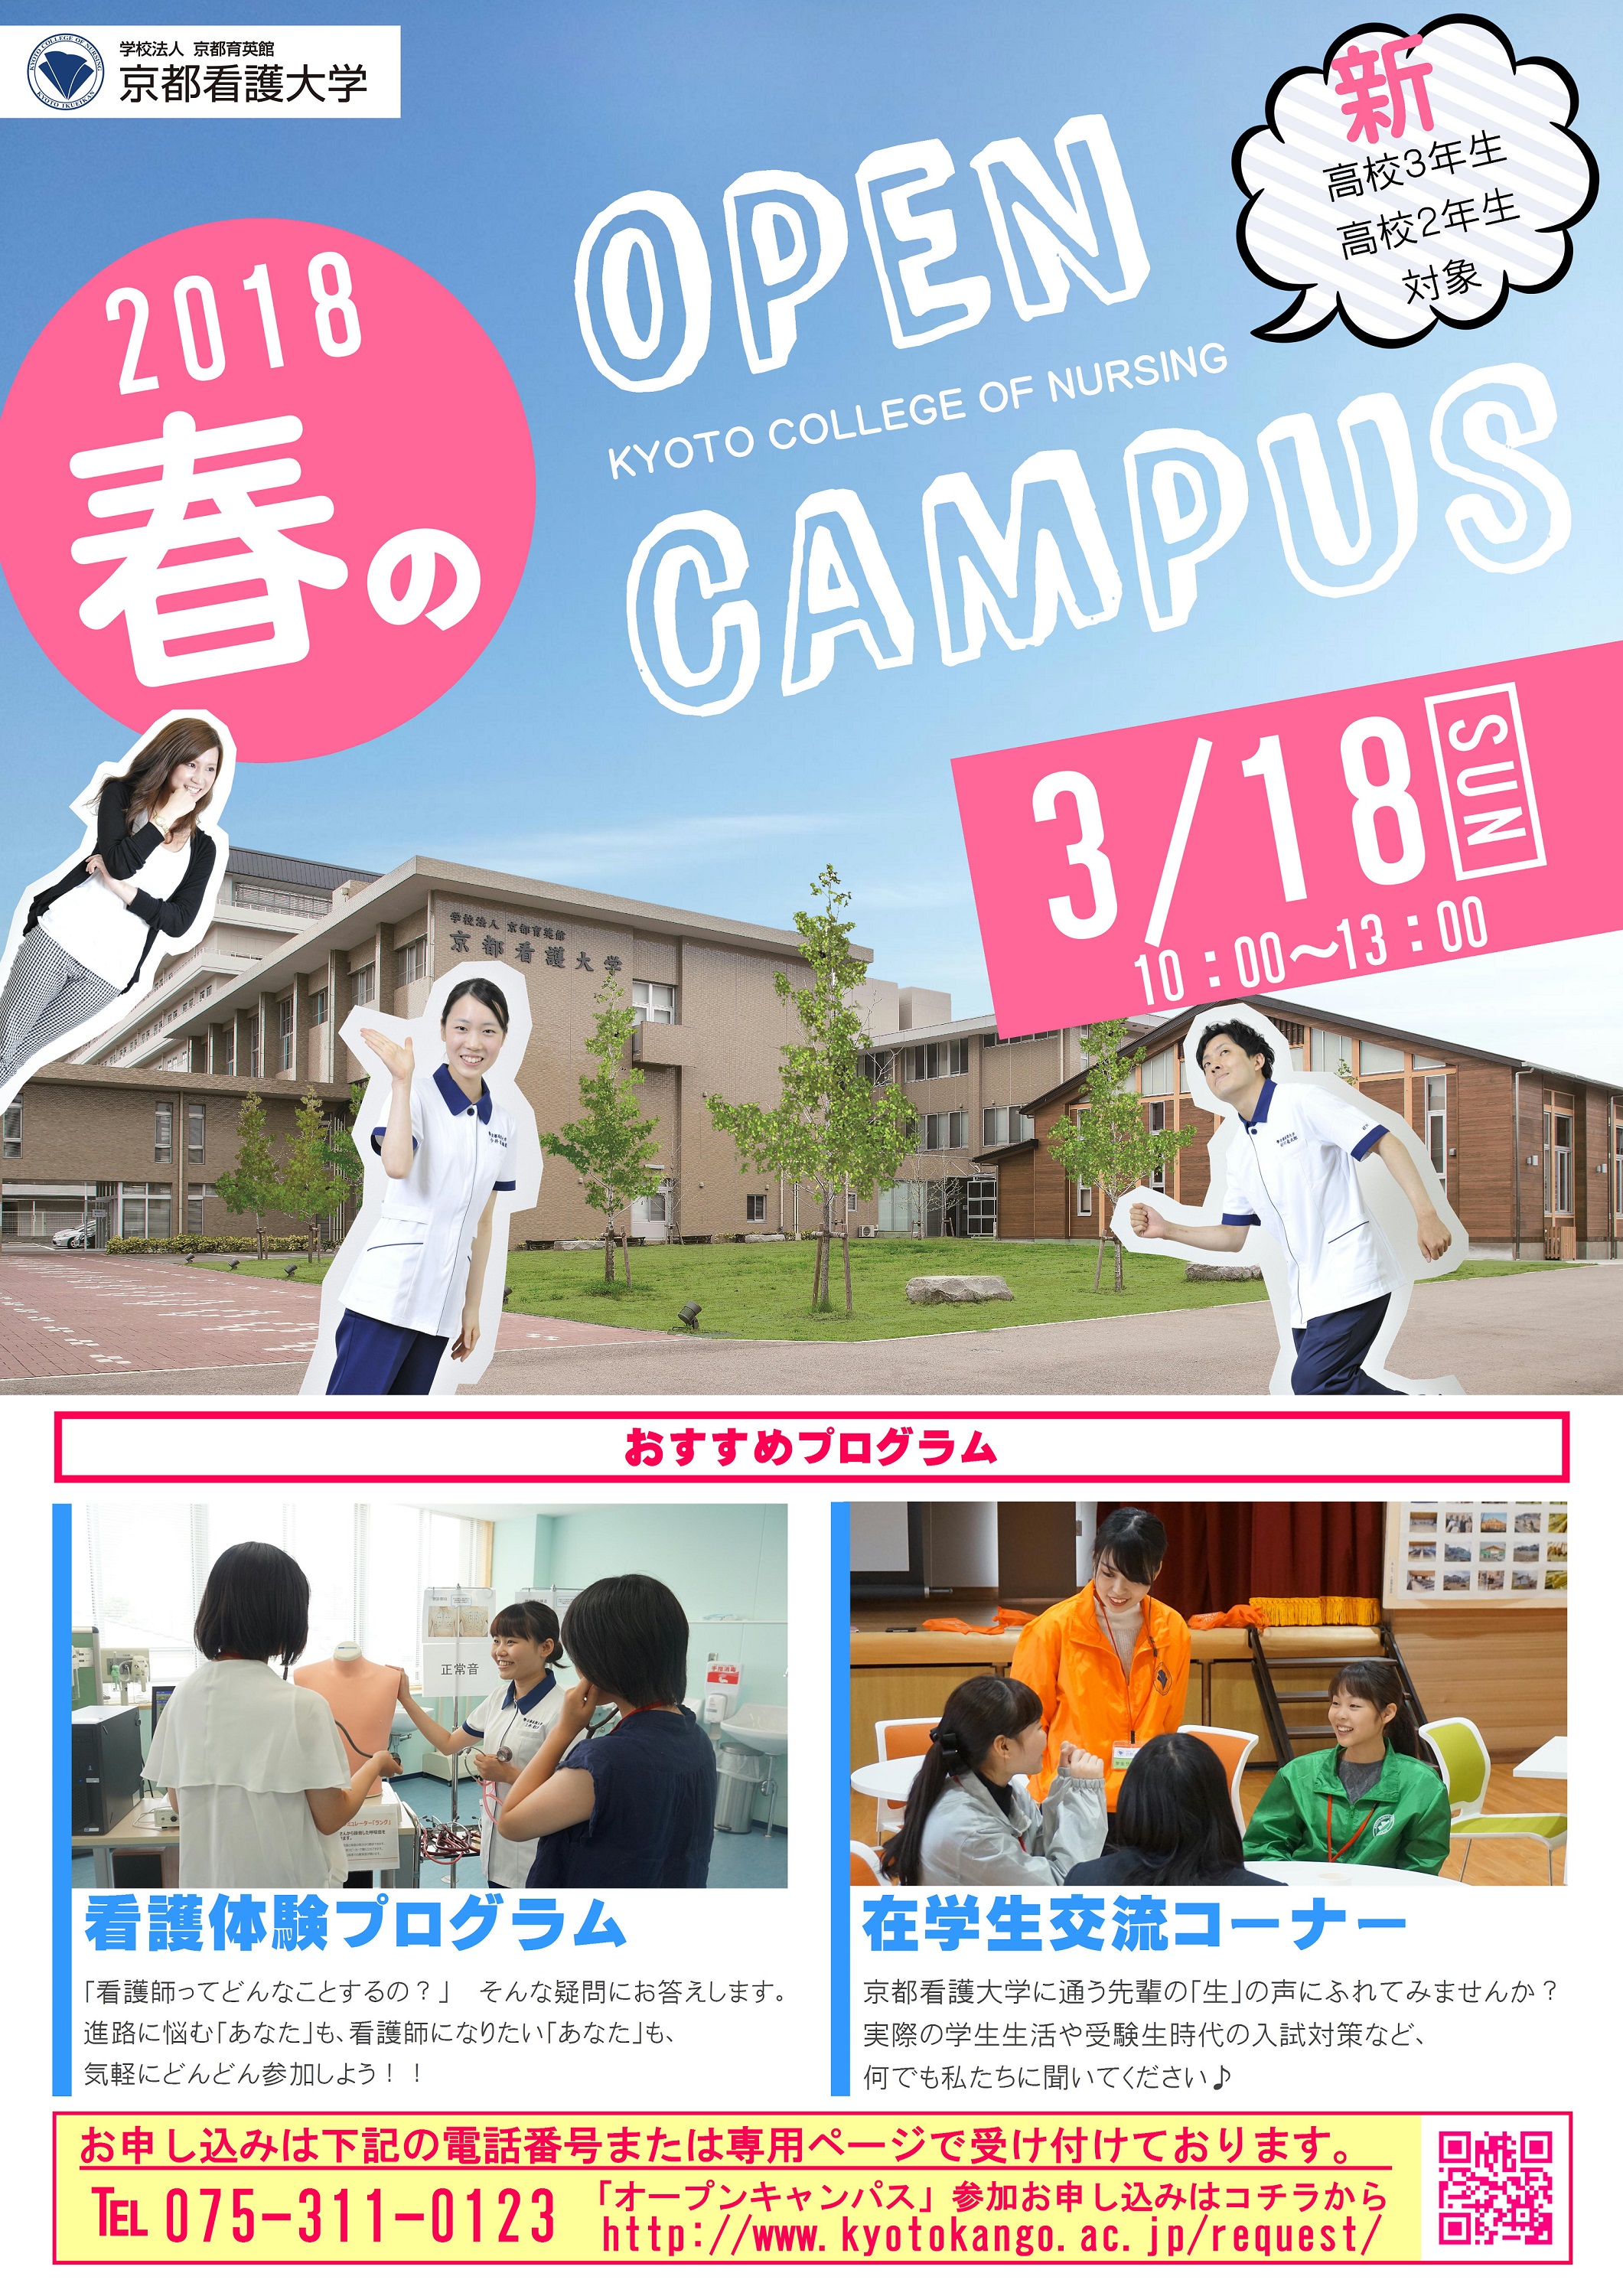 ３月１８日オープンキャンパスのチラシを発送しました - 学校法人 京都 ...